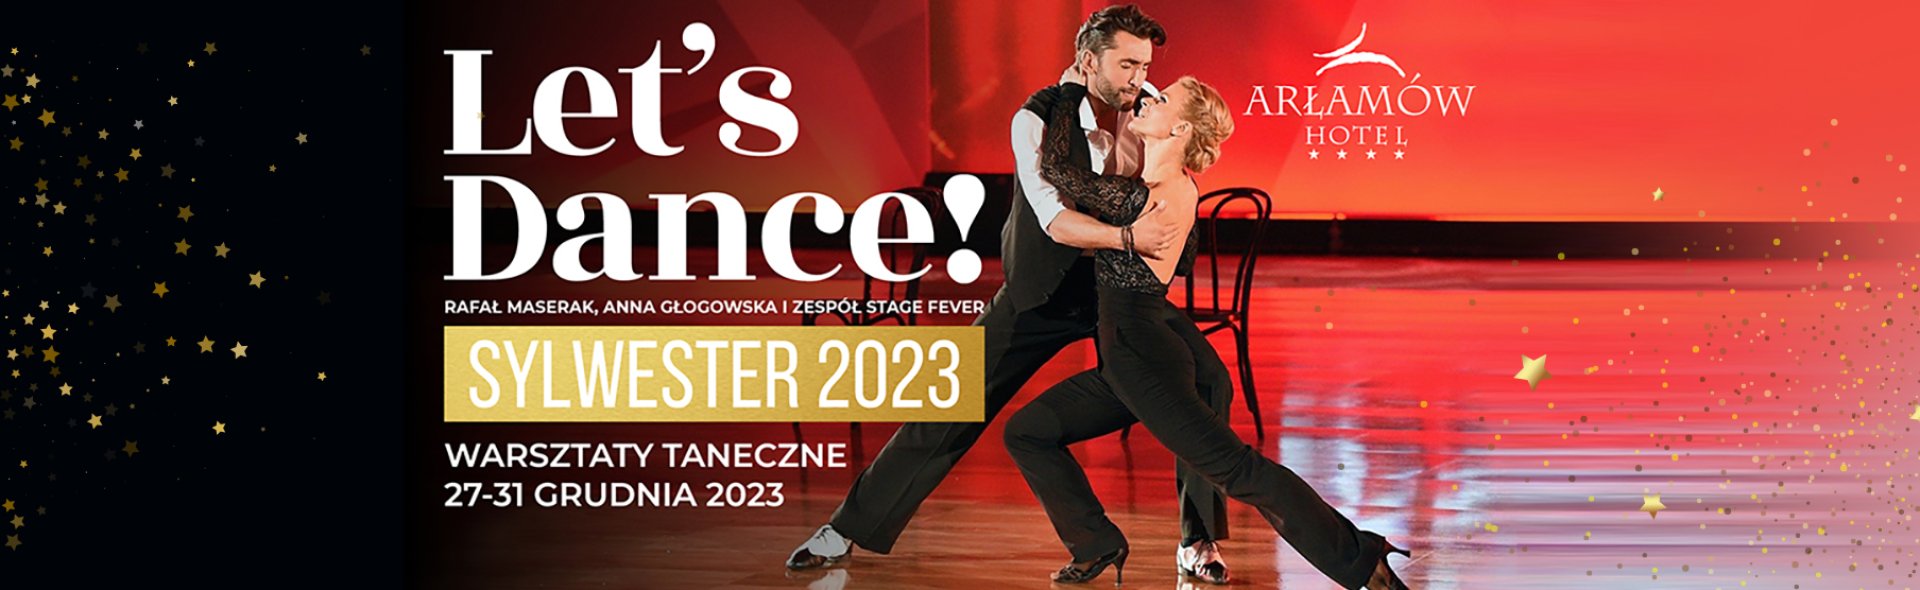 Let’s Dance! Wyjątkowy sylwester 2023 w Arłamowie z Rafałem Maserakiem i Anną Głogowską